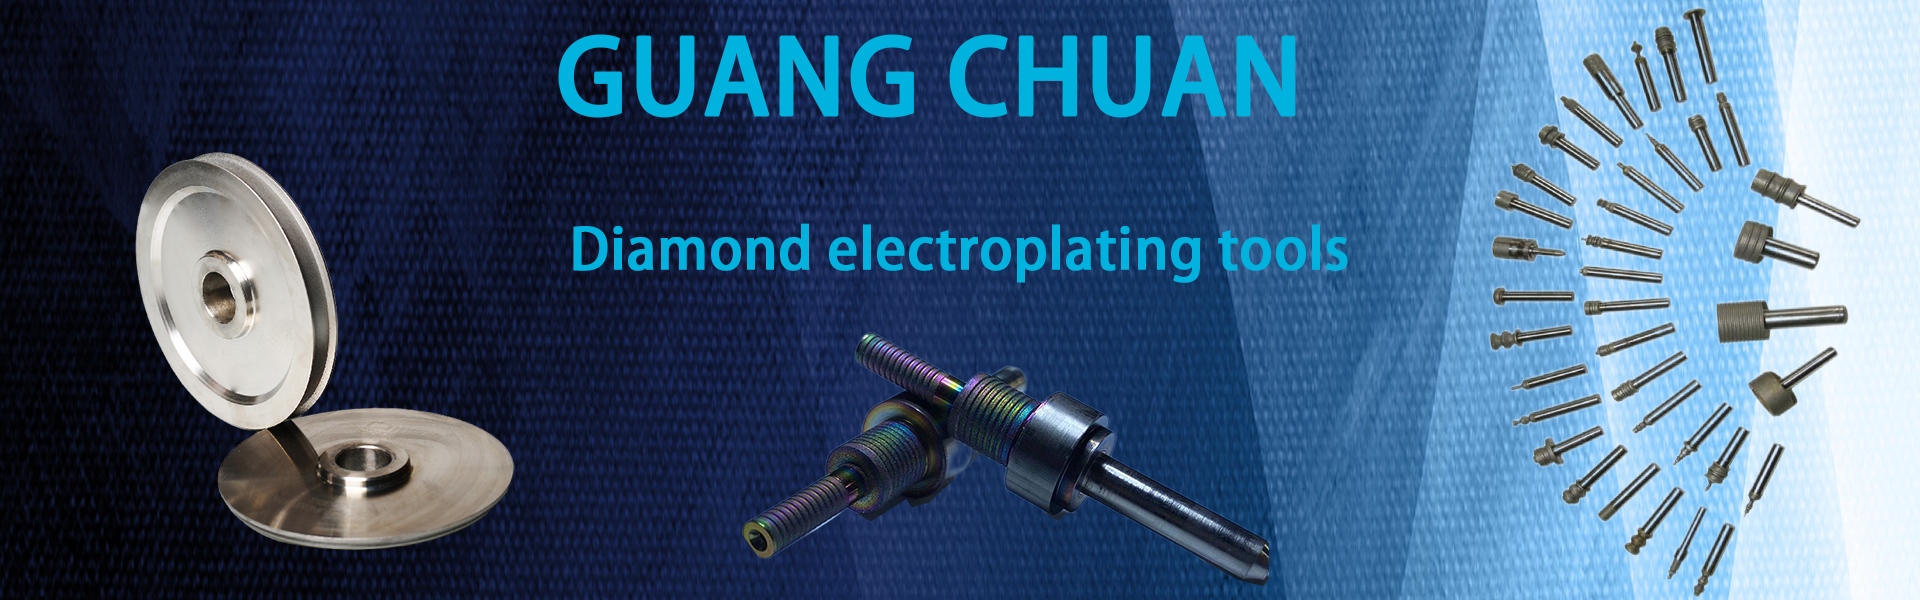 Rodas de moagem de diamante, ferramenta de diamante, brocas,Dongguan Guangchuan Abrasives Technology Co., Ltd